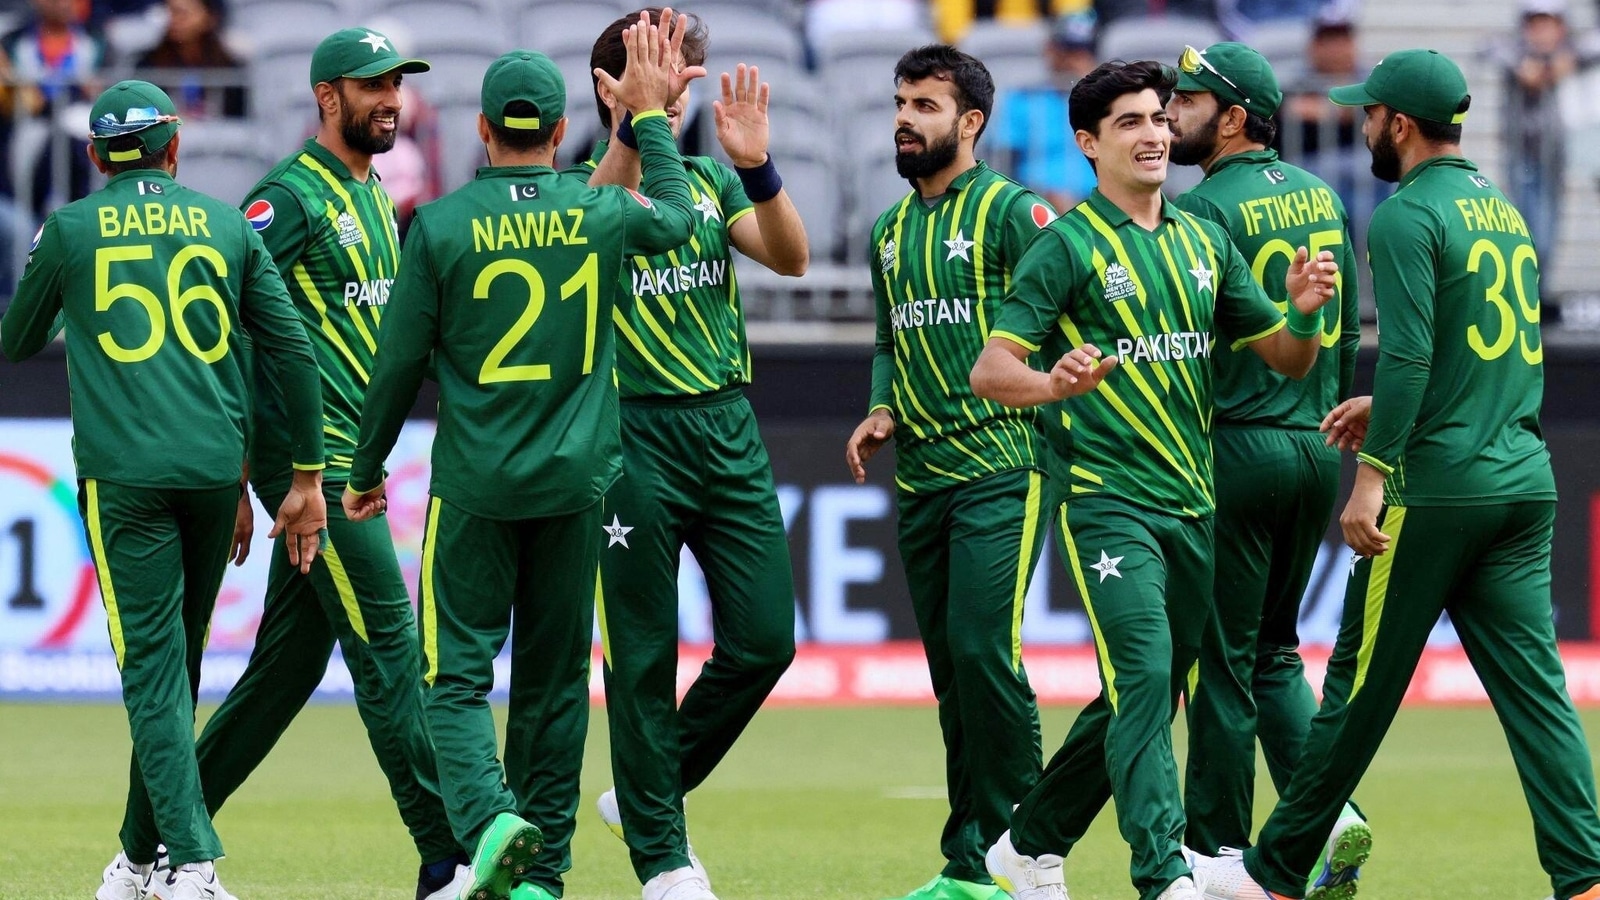 Pakistan versloeg Nederlanders, Bangladesh in de laatste bal tegen Zimbabwe  knuppel